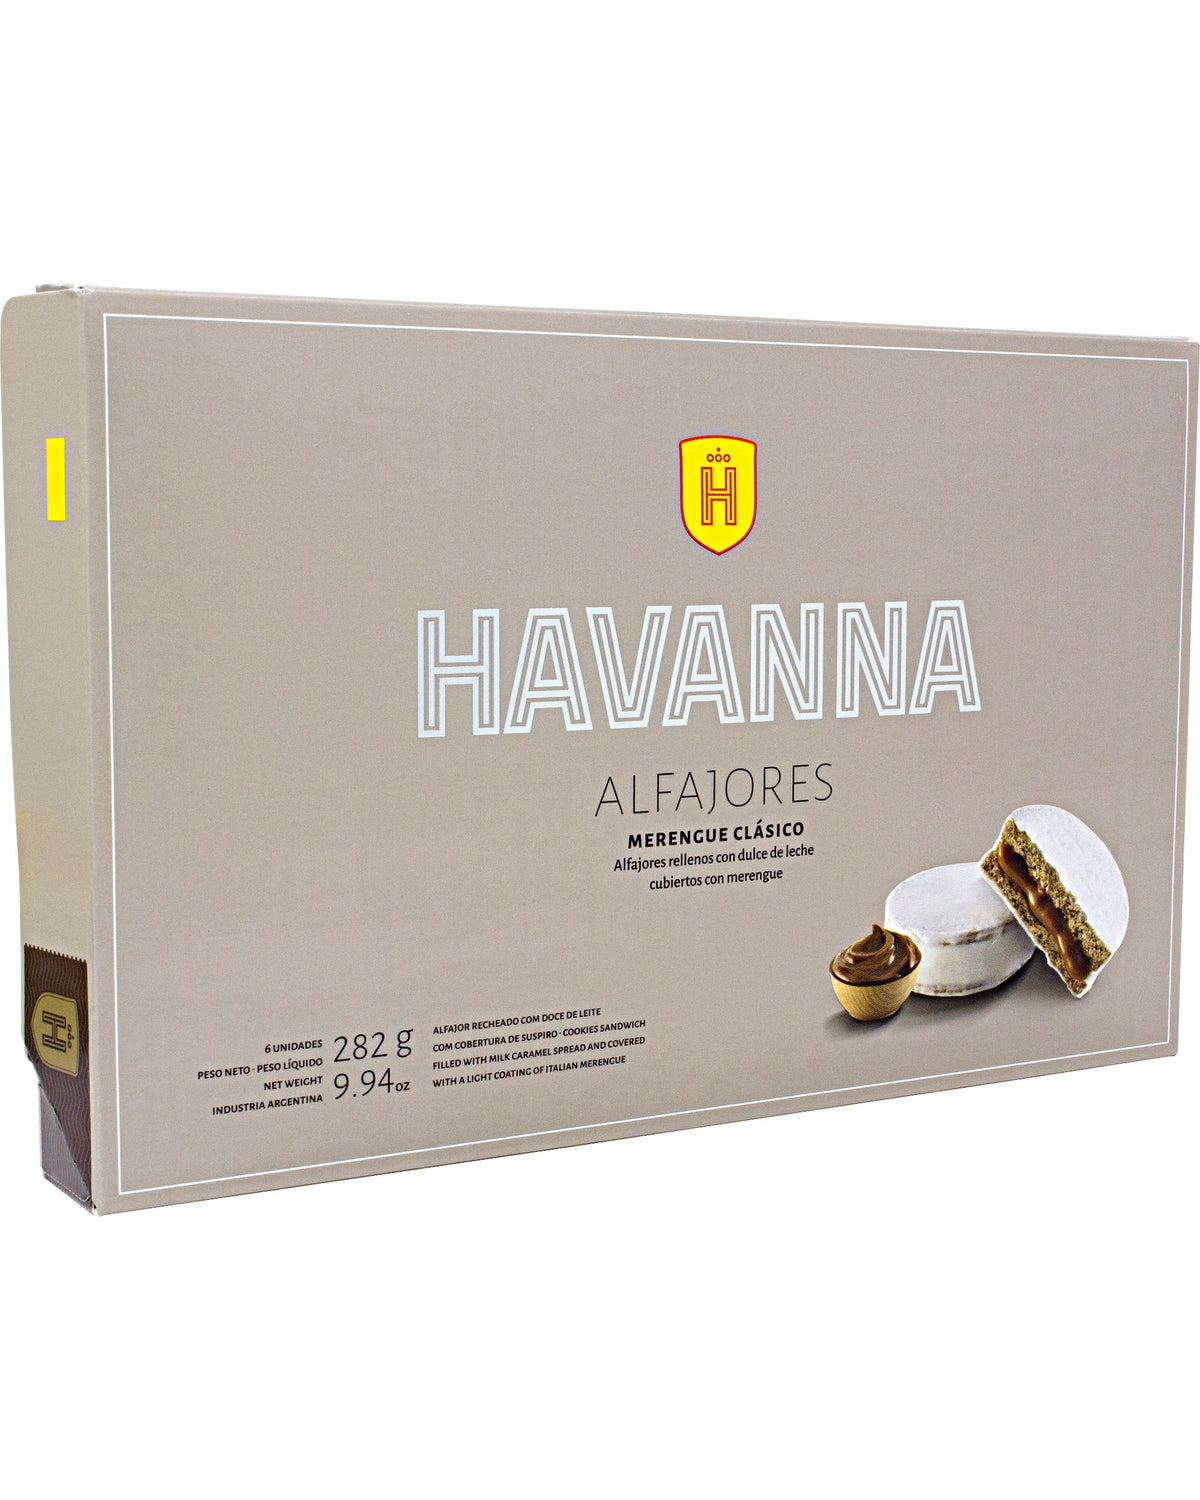 A selection of Havanna Alfajores (Classic Meringue) (Box of 6